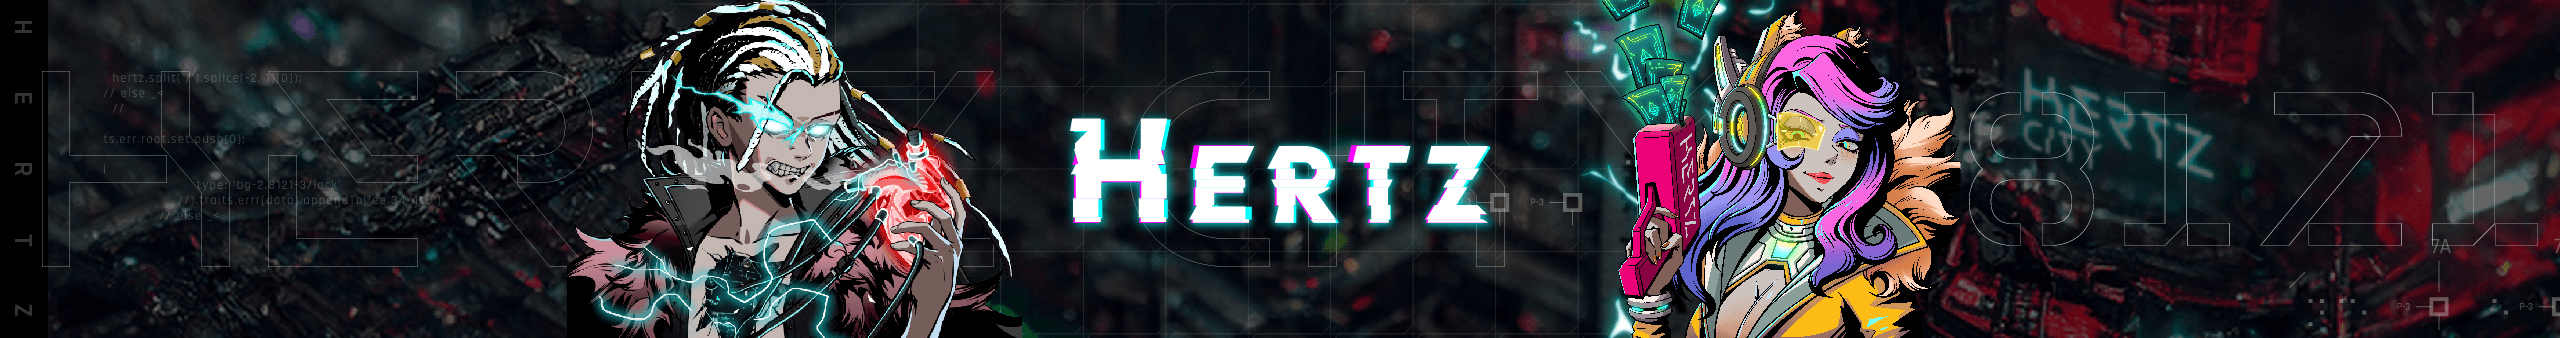 HertzCity Official